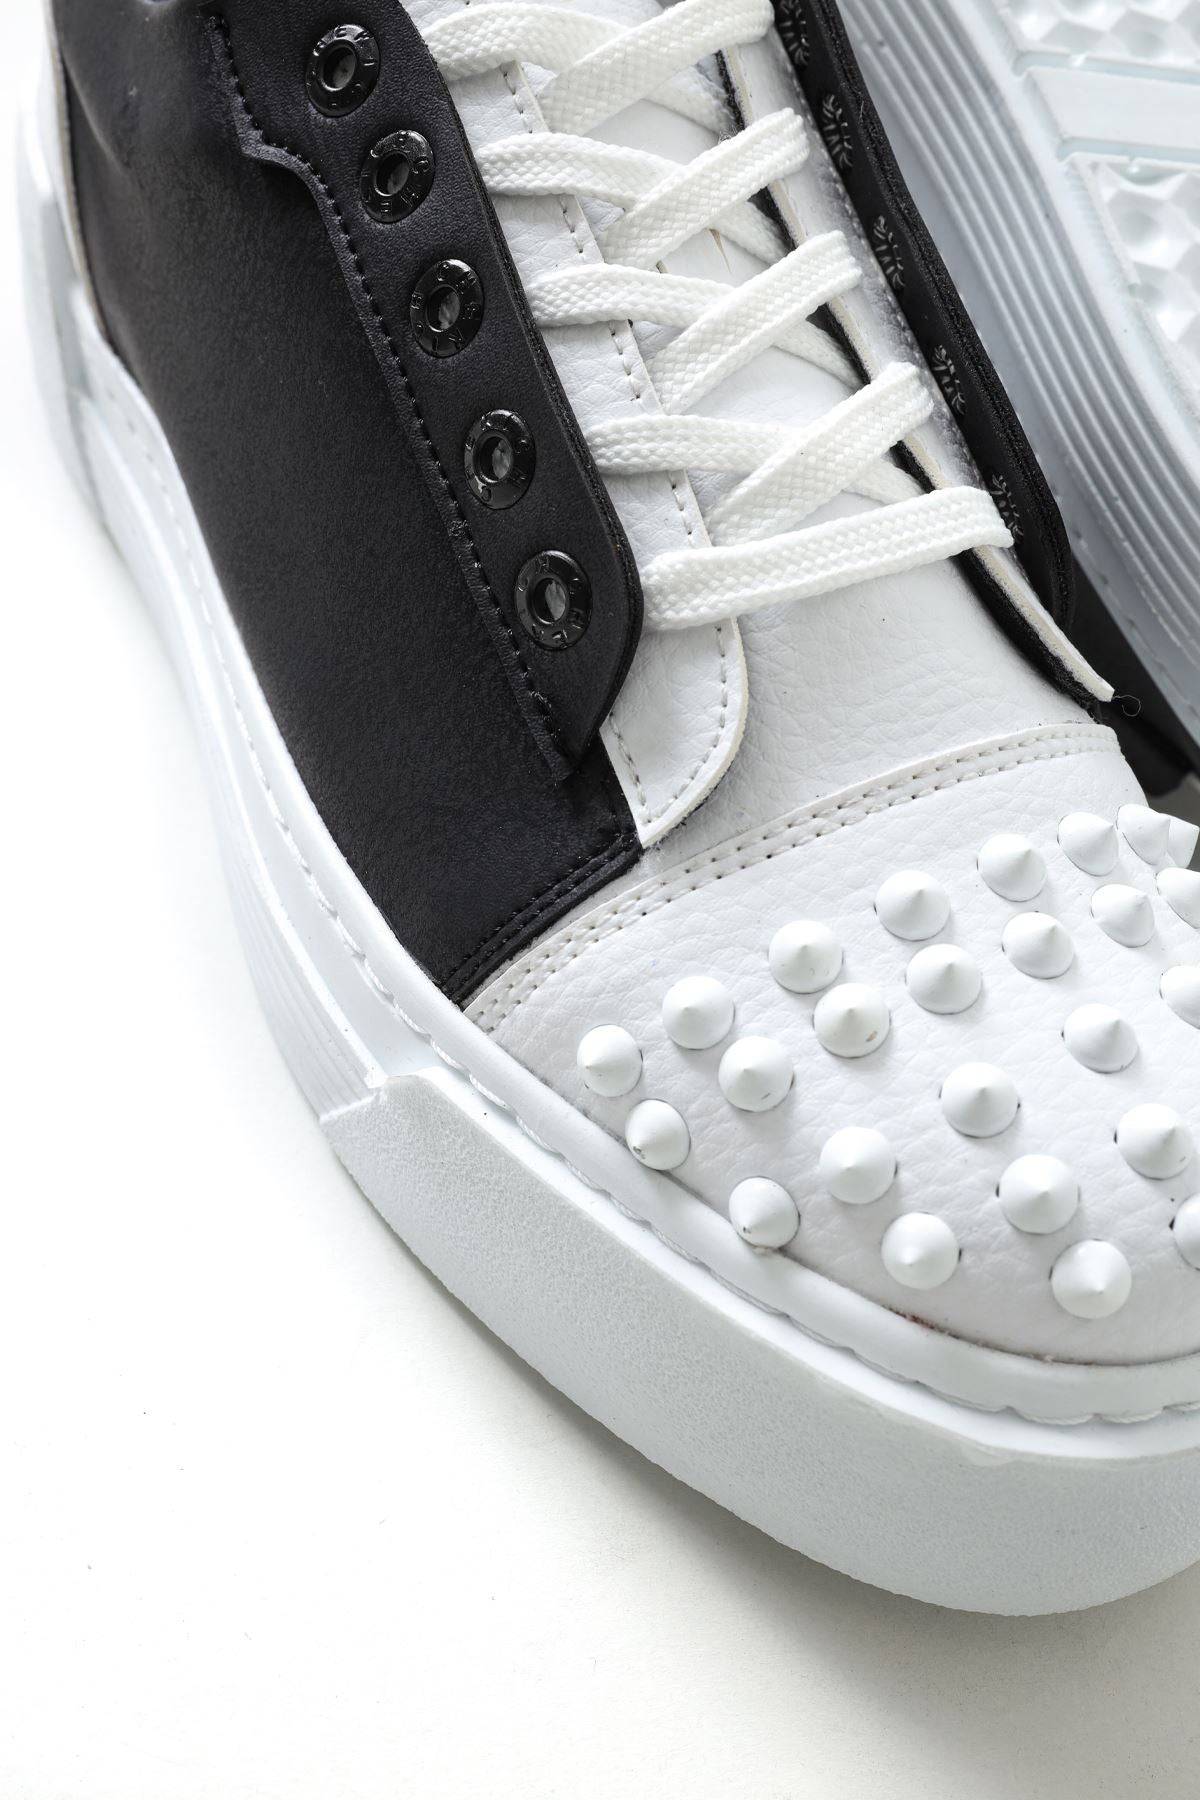 Spike Toe Casual Sneakers for Men by Apollo Moda | Celtics Monochrome Charm